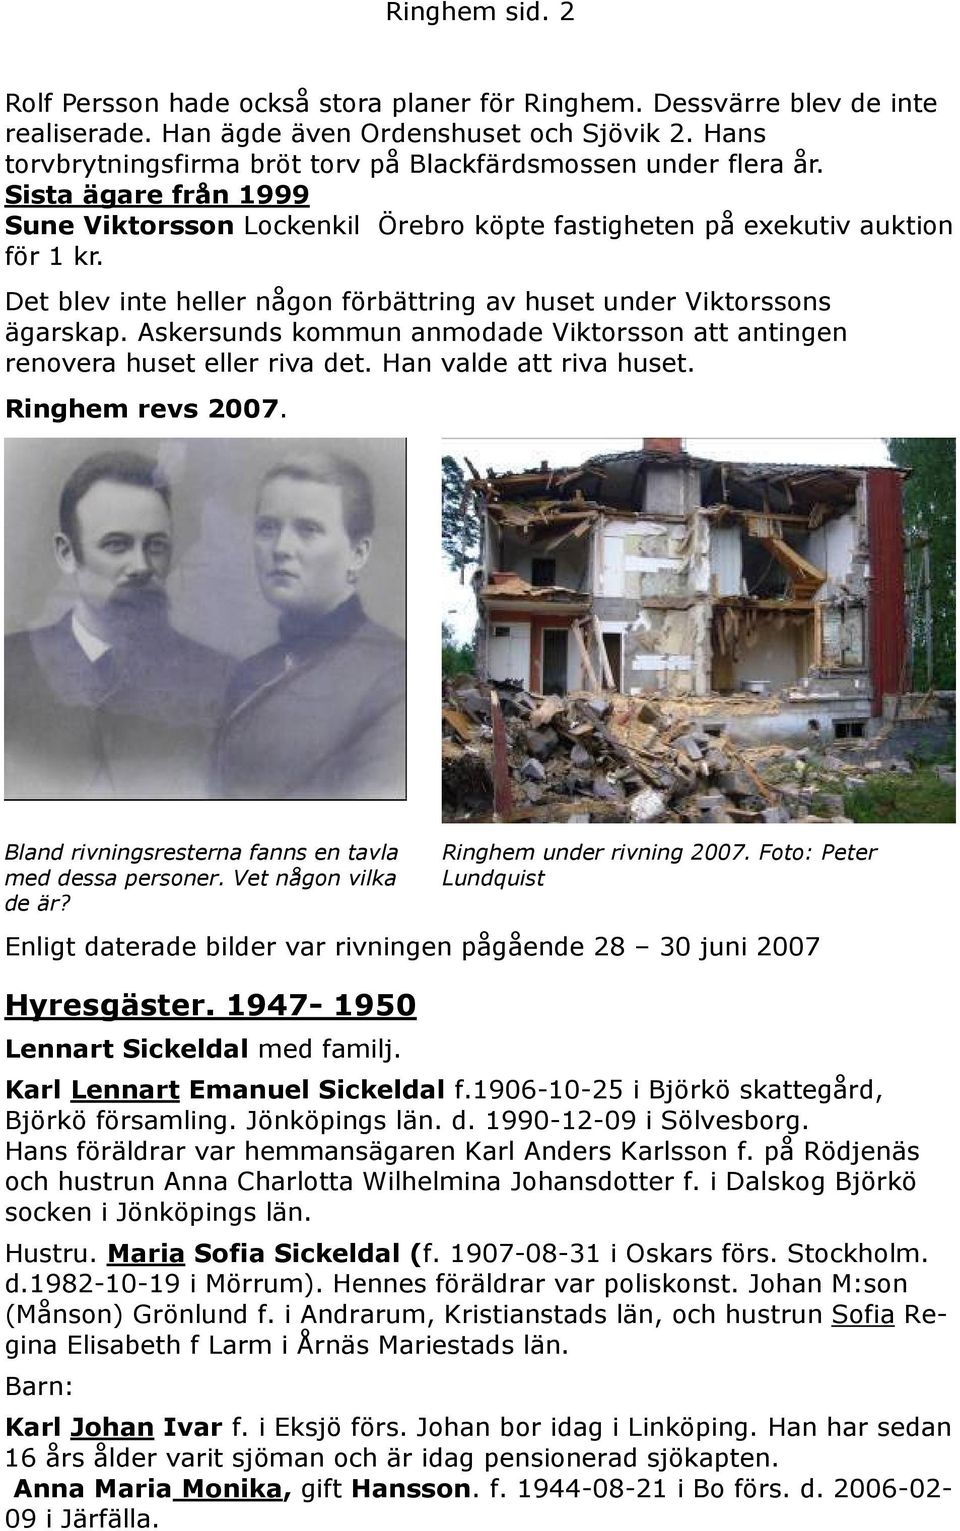 Det blev inte heller någon förbättring av huset under Viktorssons ägarskap. Askersunds kommun anmodade Viktorsson att antingen renovera huset eller riva det. Han valde att riva huset.